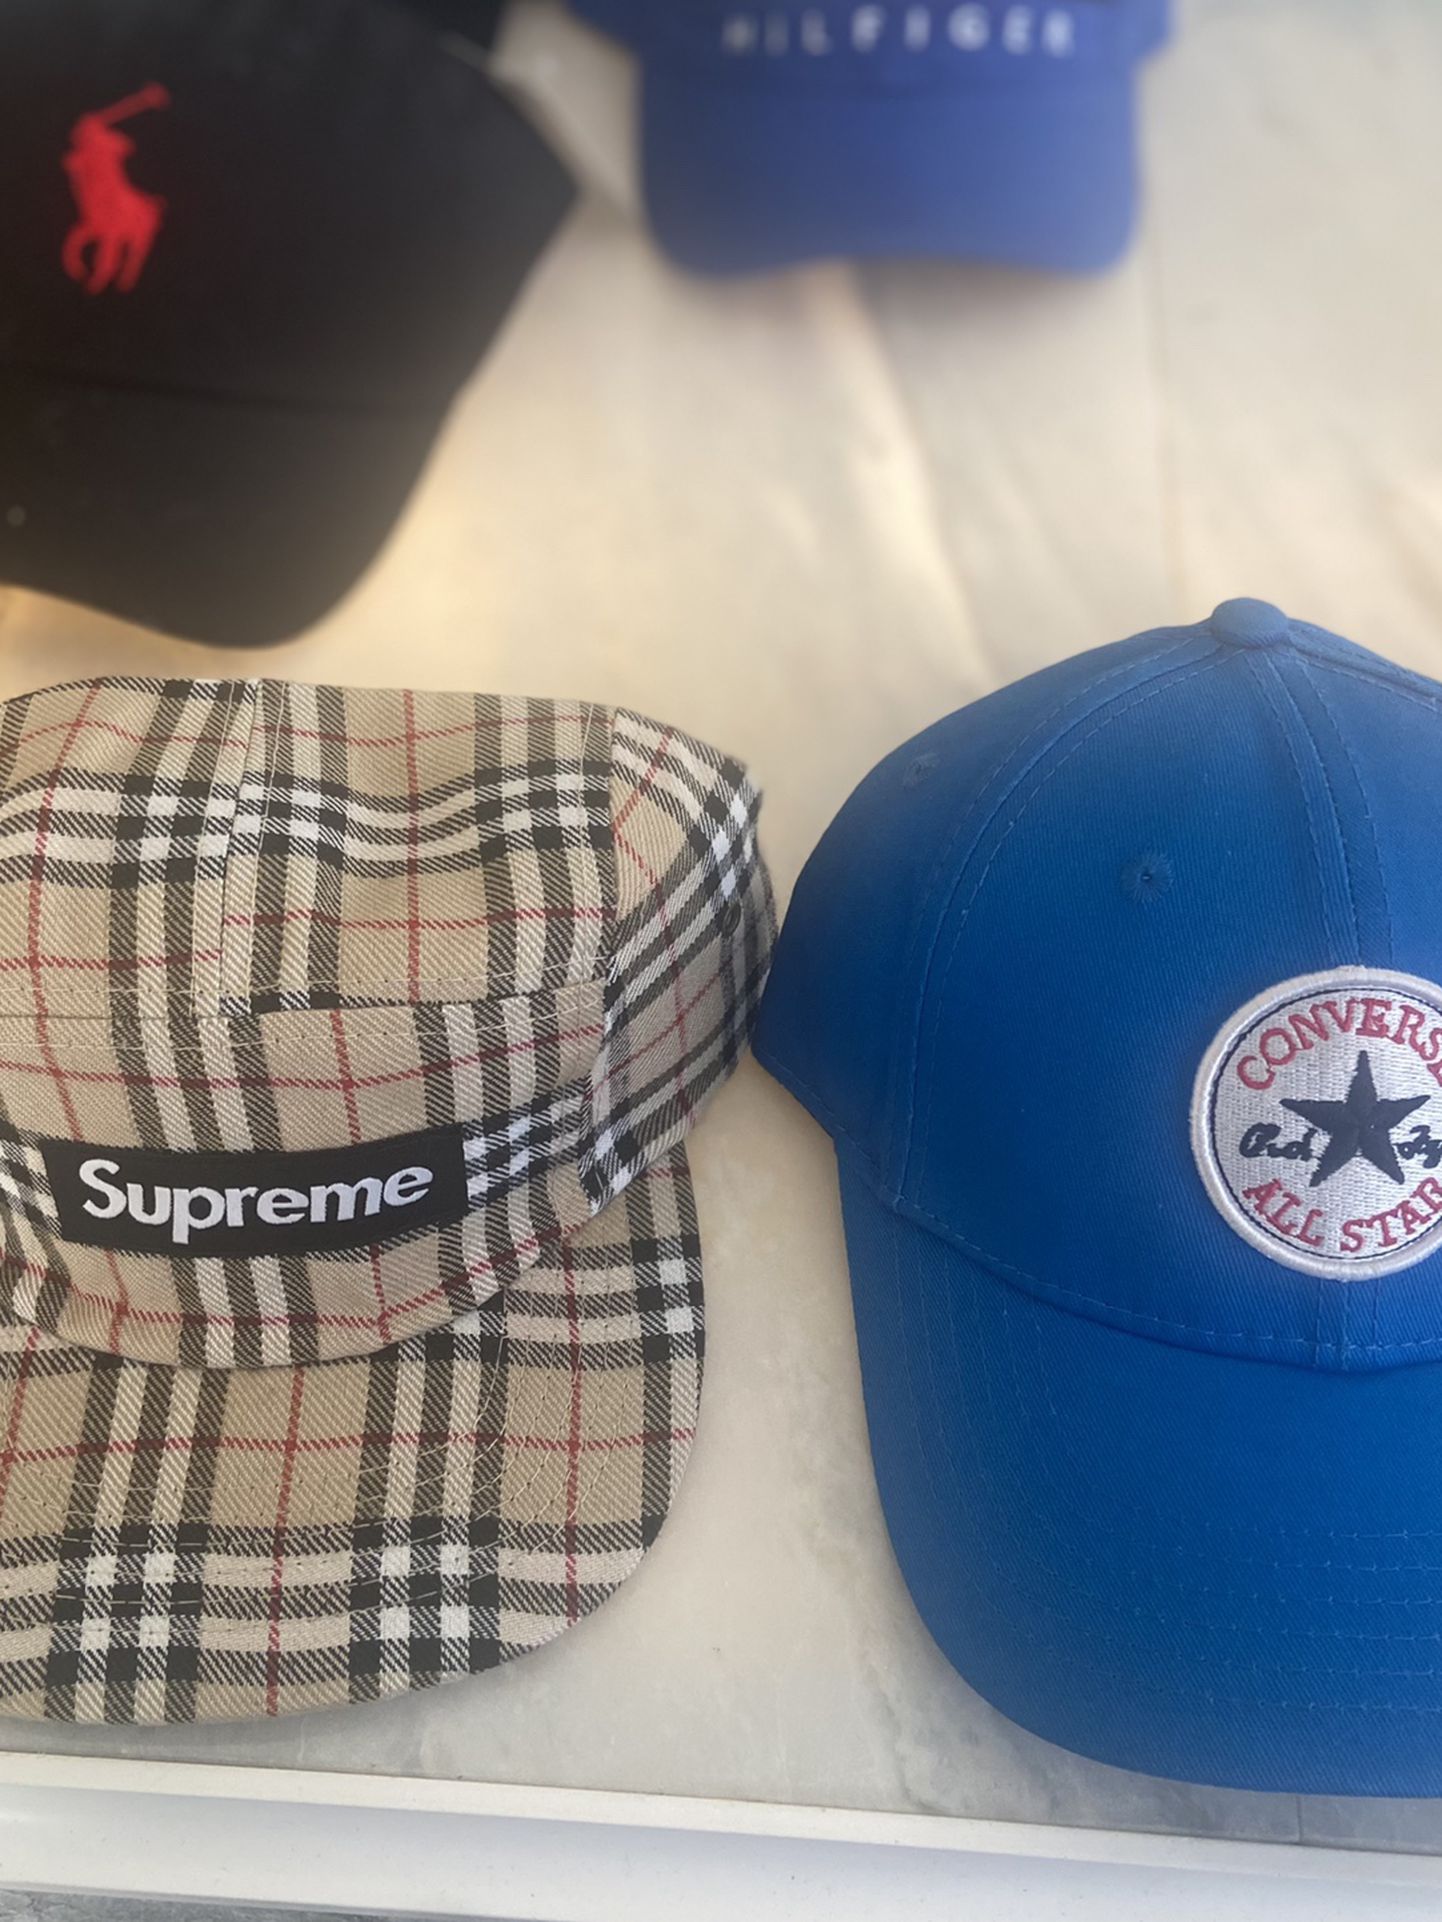 Supreme & Converse Hat 🧢 